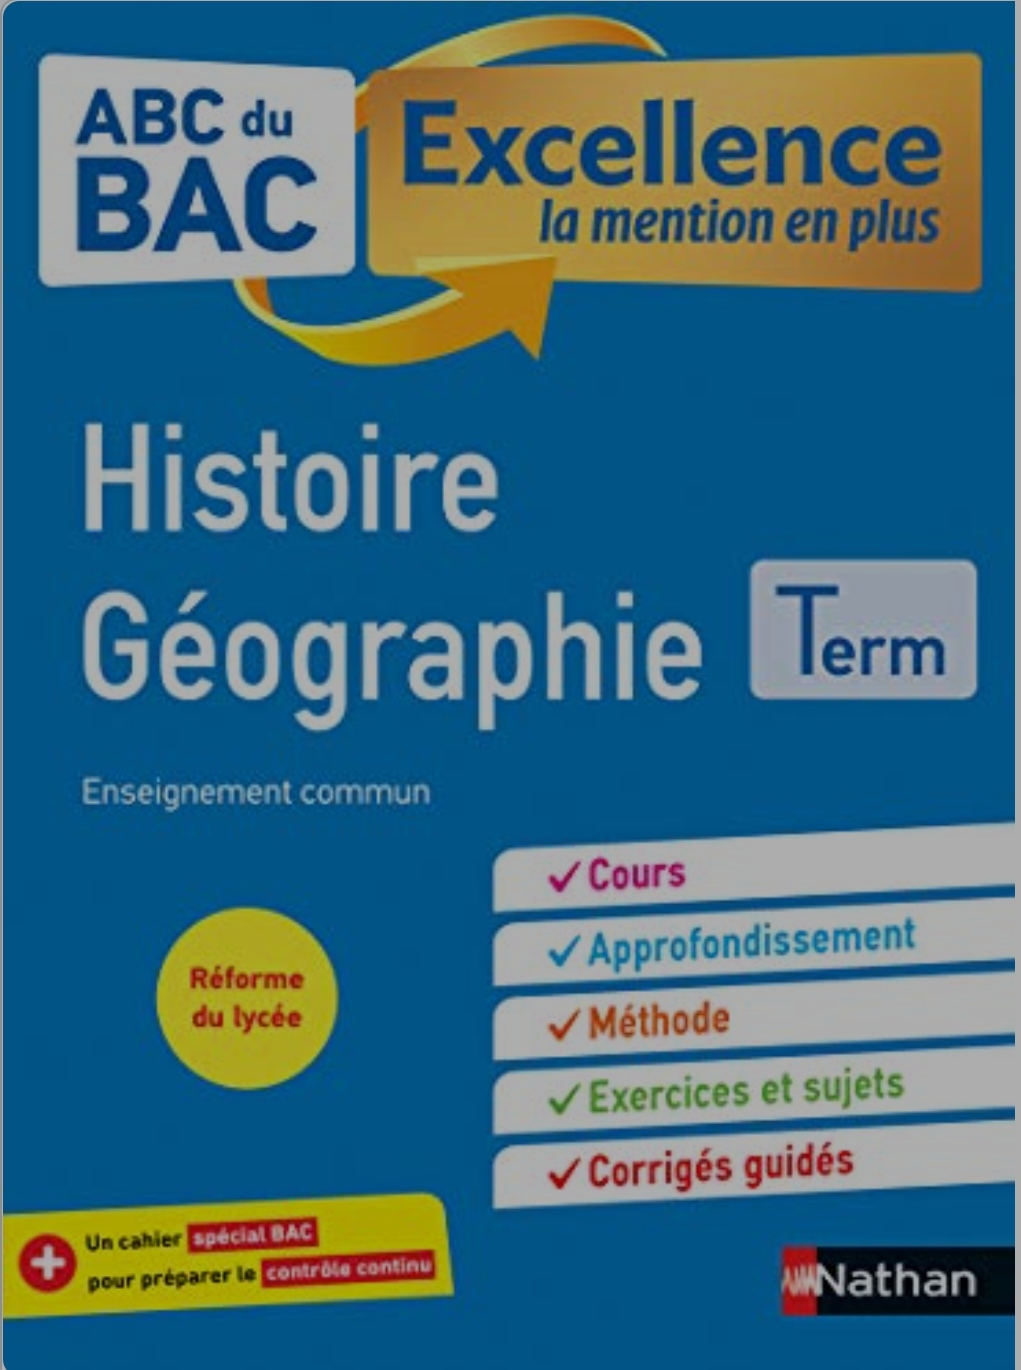 Histoire-Géographie Terminale - ABC du BAC Excellence - Bac 2023